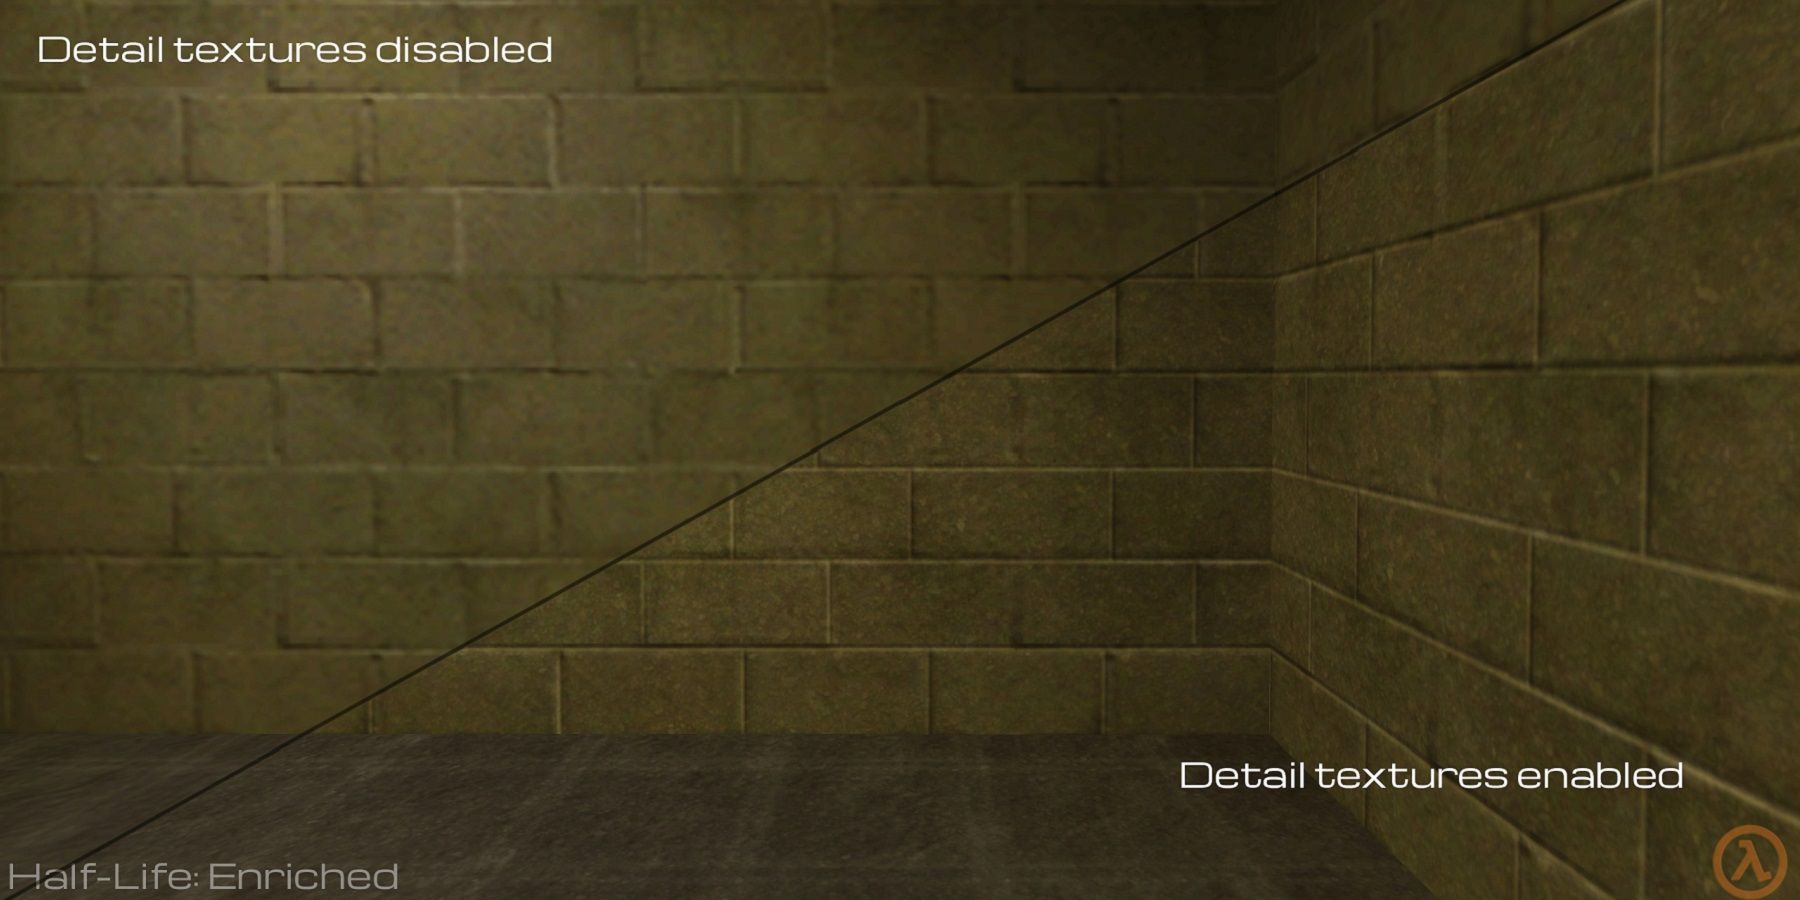 Изображение с разделенным экраном из мода Half-Life, которое показывает улучшенные текстуры по сравнению с оригинальными визуальными эффектами.